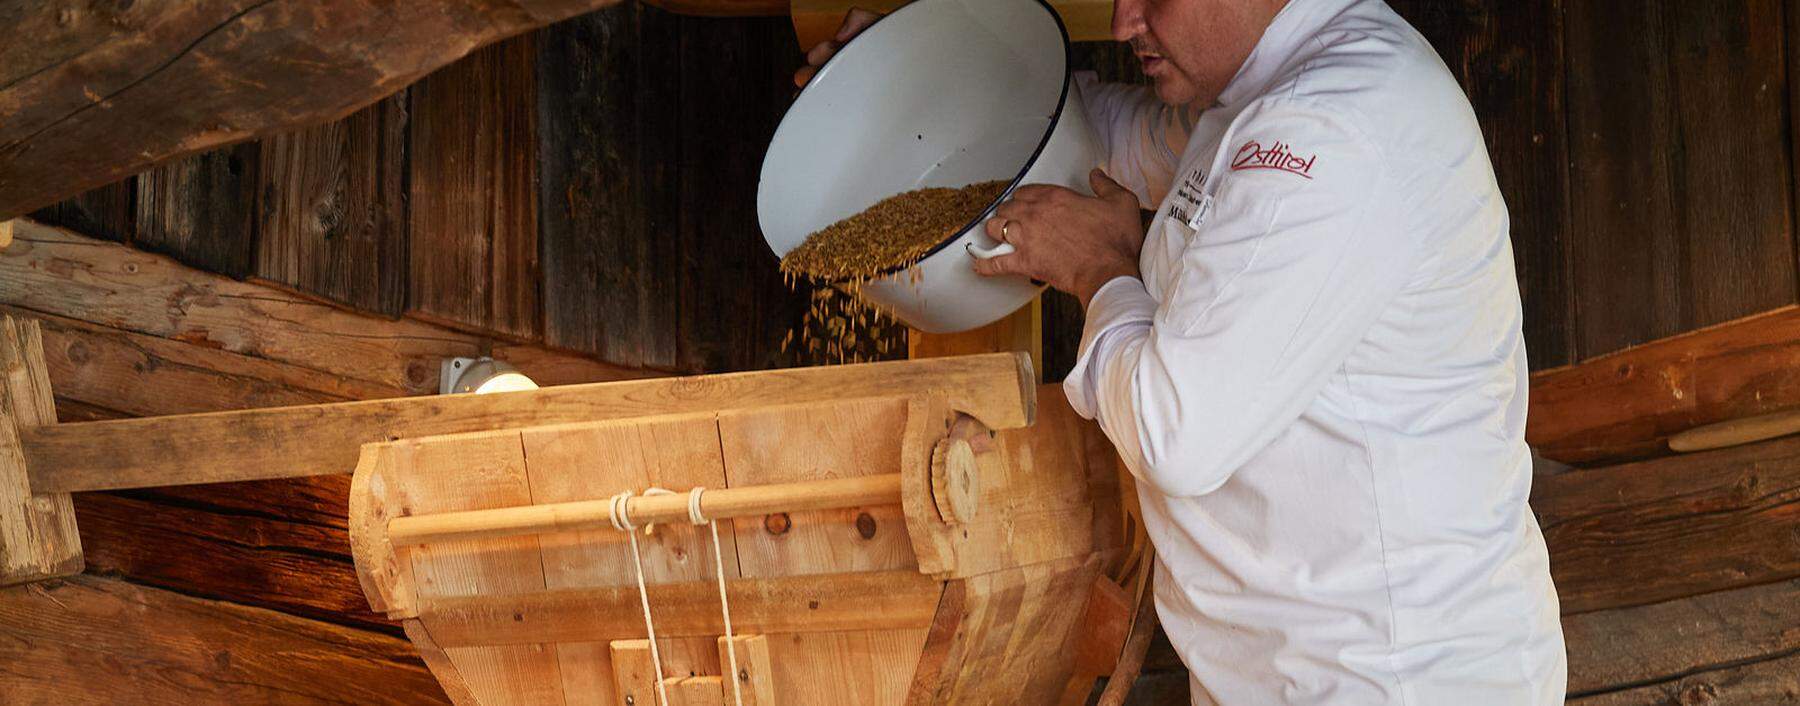 Josef Mühlmann mit seiner renovierten historischen Getreidemühle, die besonders feines Mehl (Typ 400) mahlen kann. 